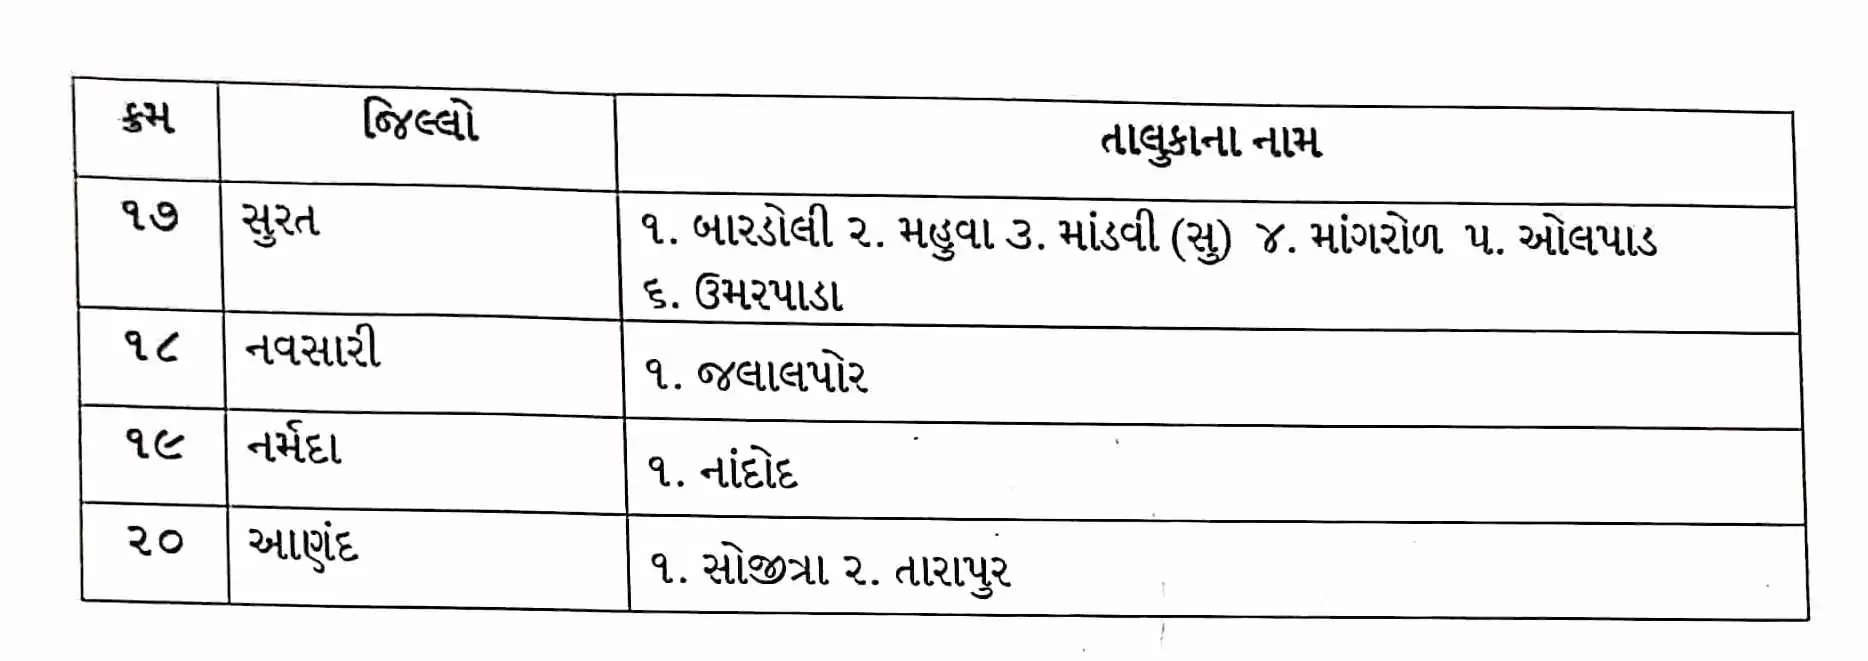 નિર્ણય@ગુજરાત: 123 તાલુકામાં પાક નુકશાન માટે 3700 કરોડનું પેકેજ જાહેર